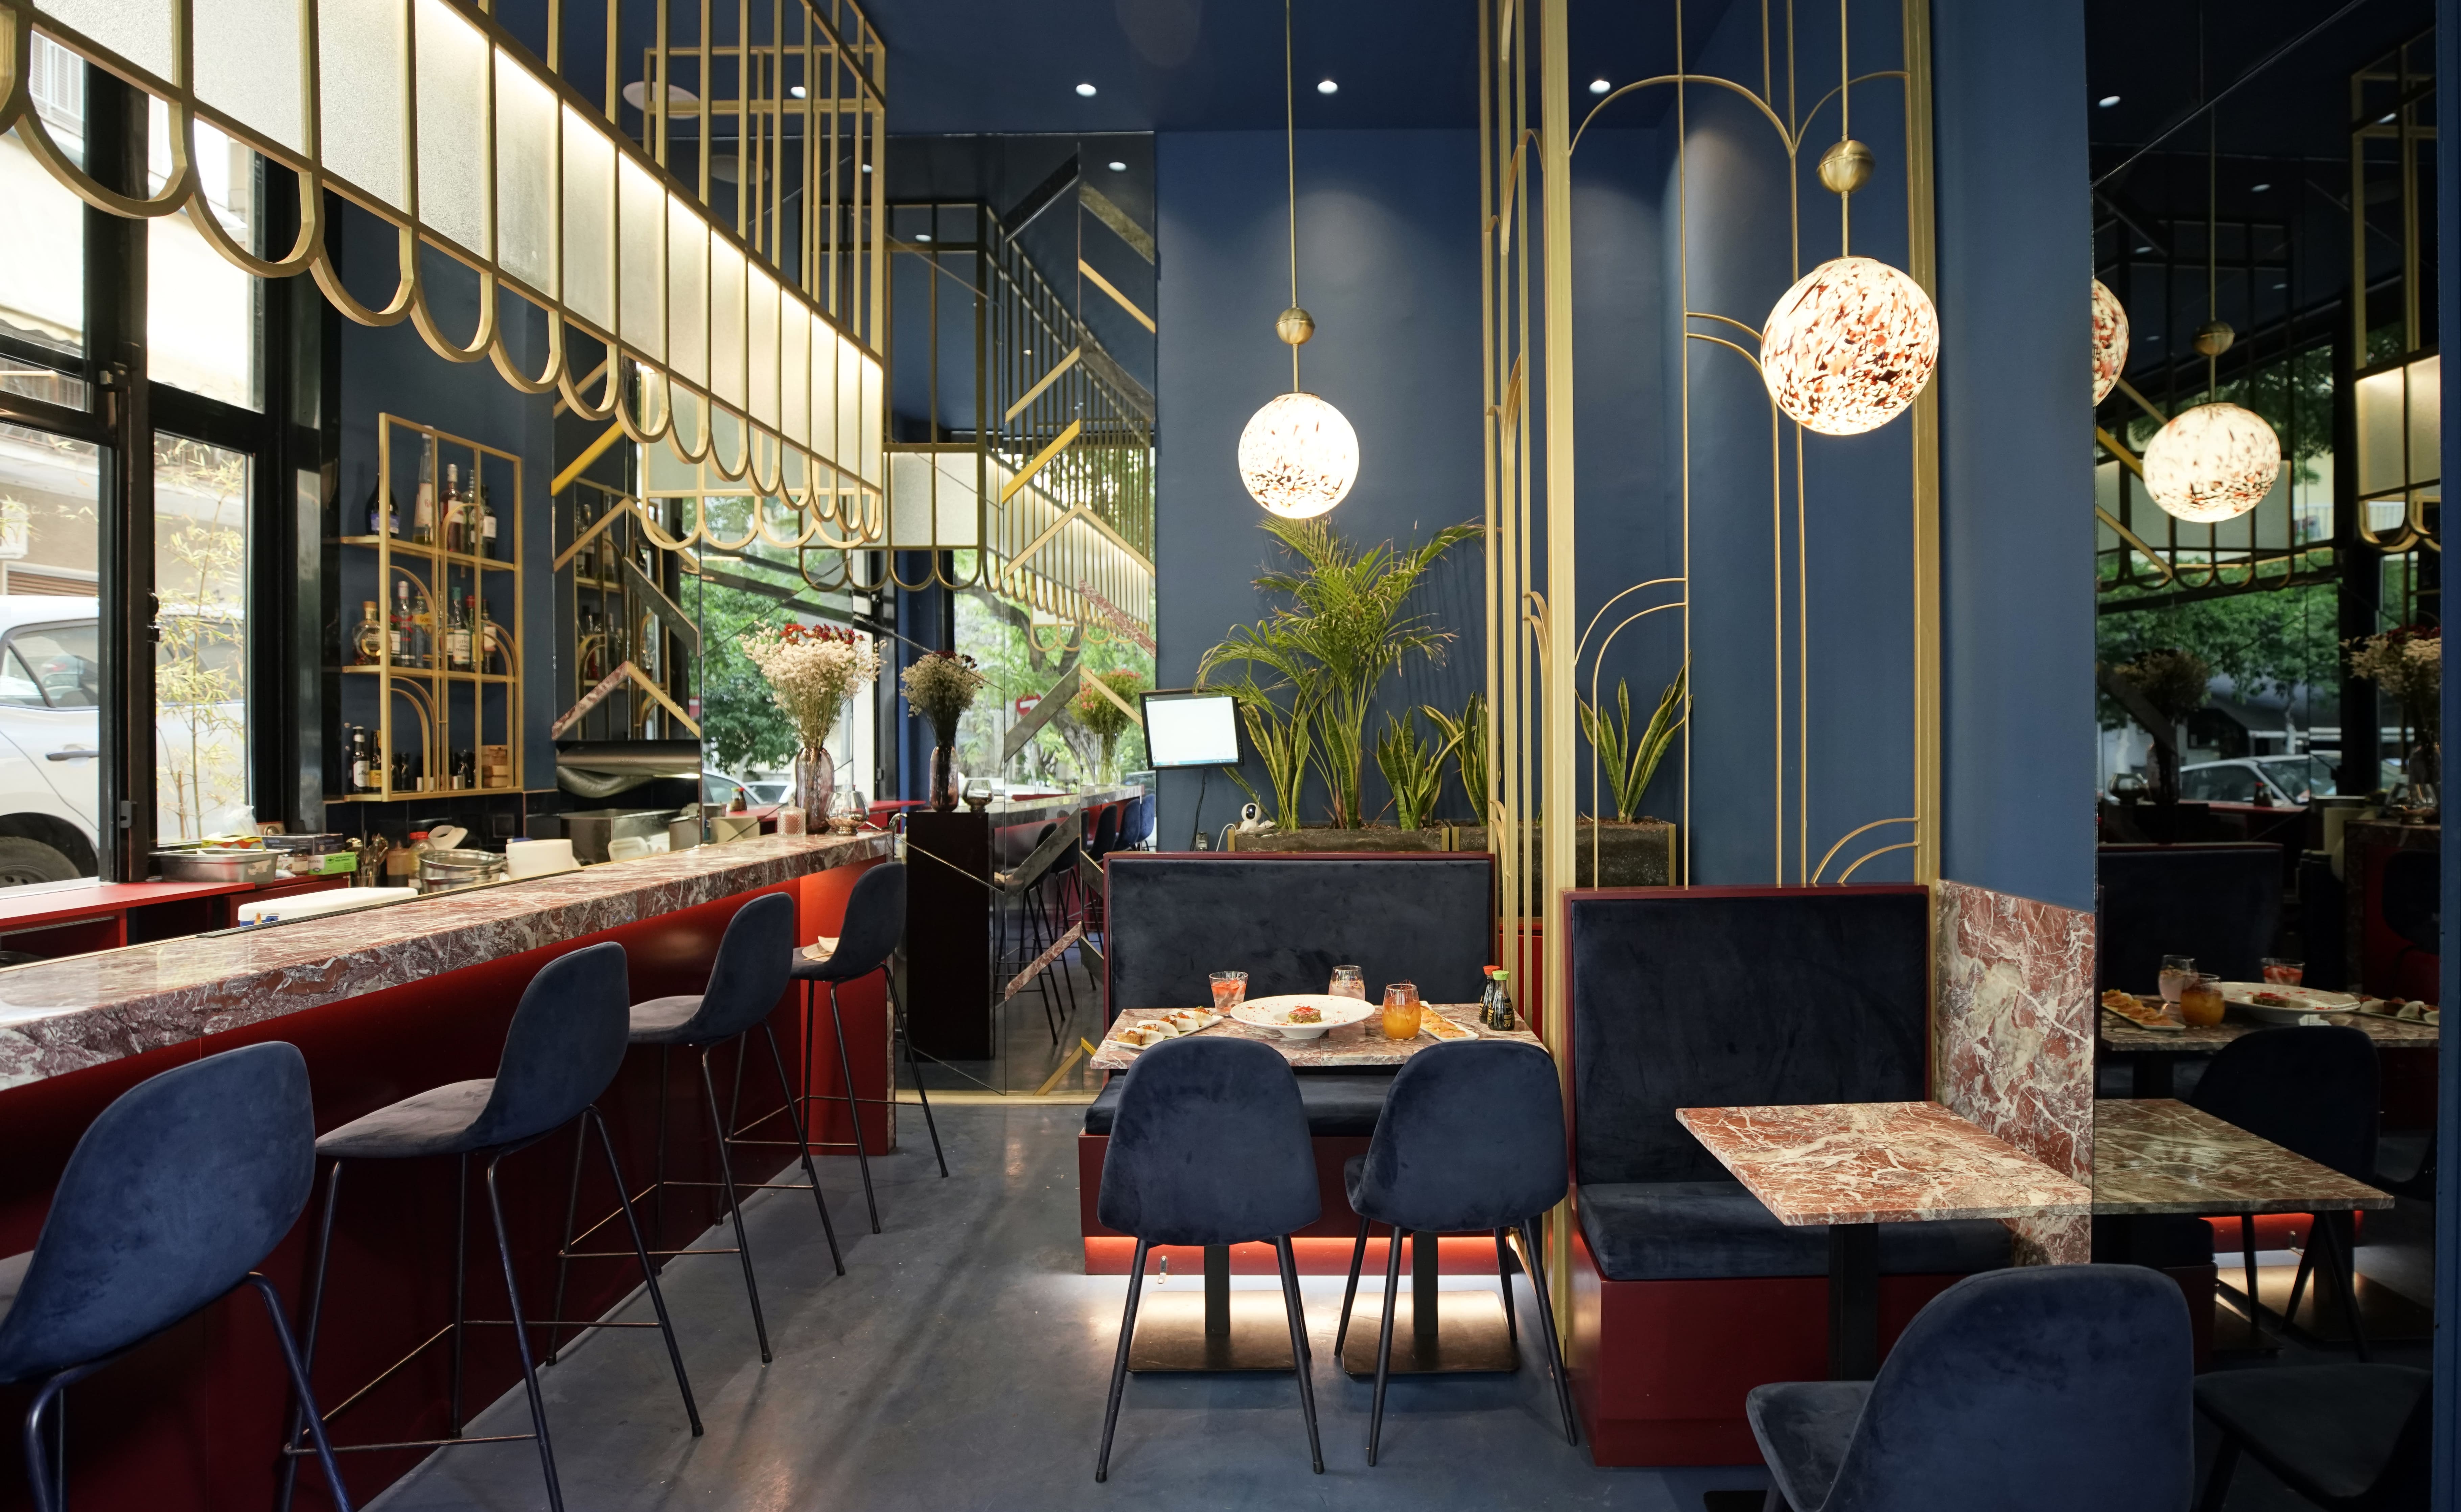 Yoko Sushi & Bento: Το sushi bar του Παγκρατίου που αξίζει να ανακαλύψεις